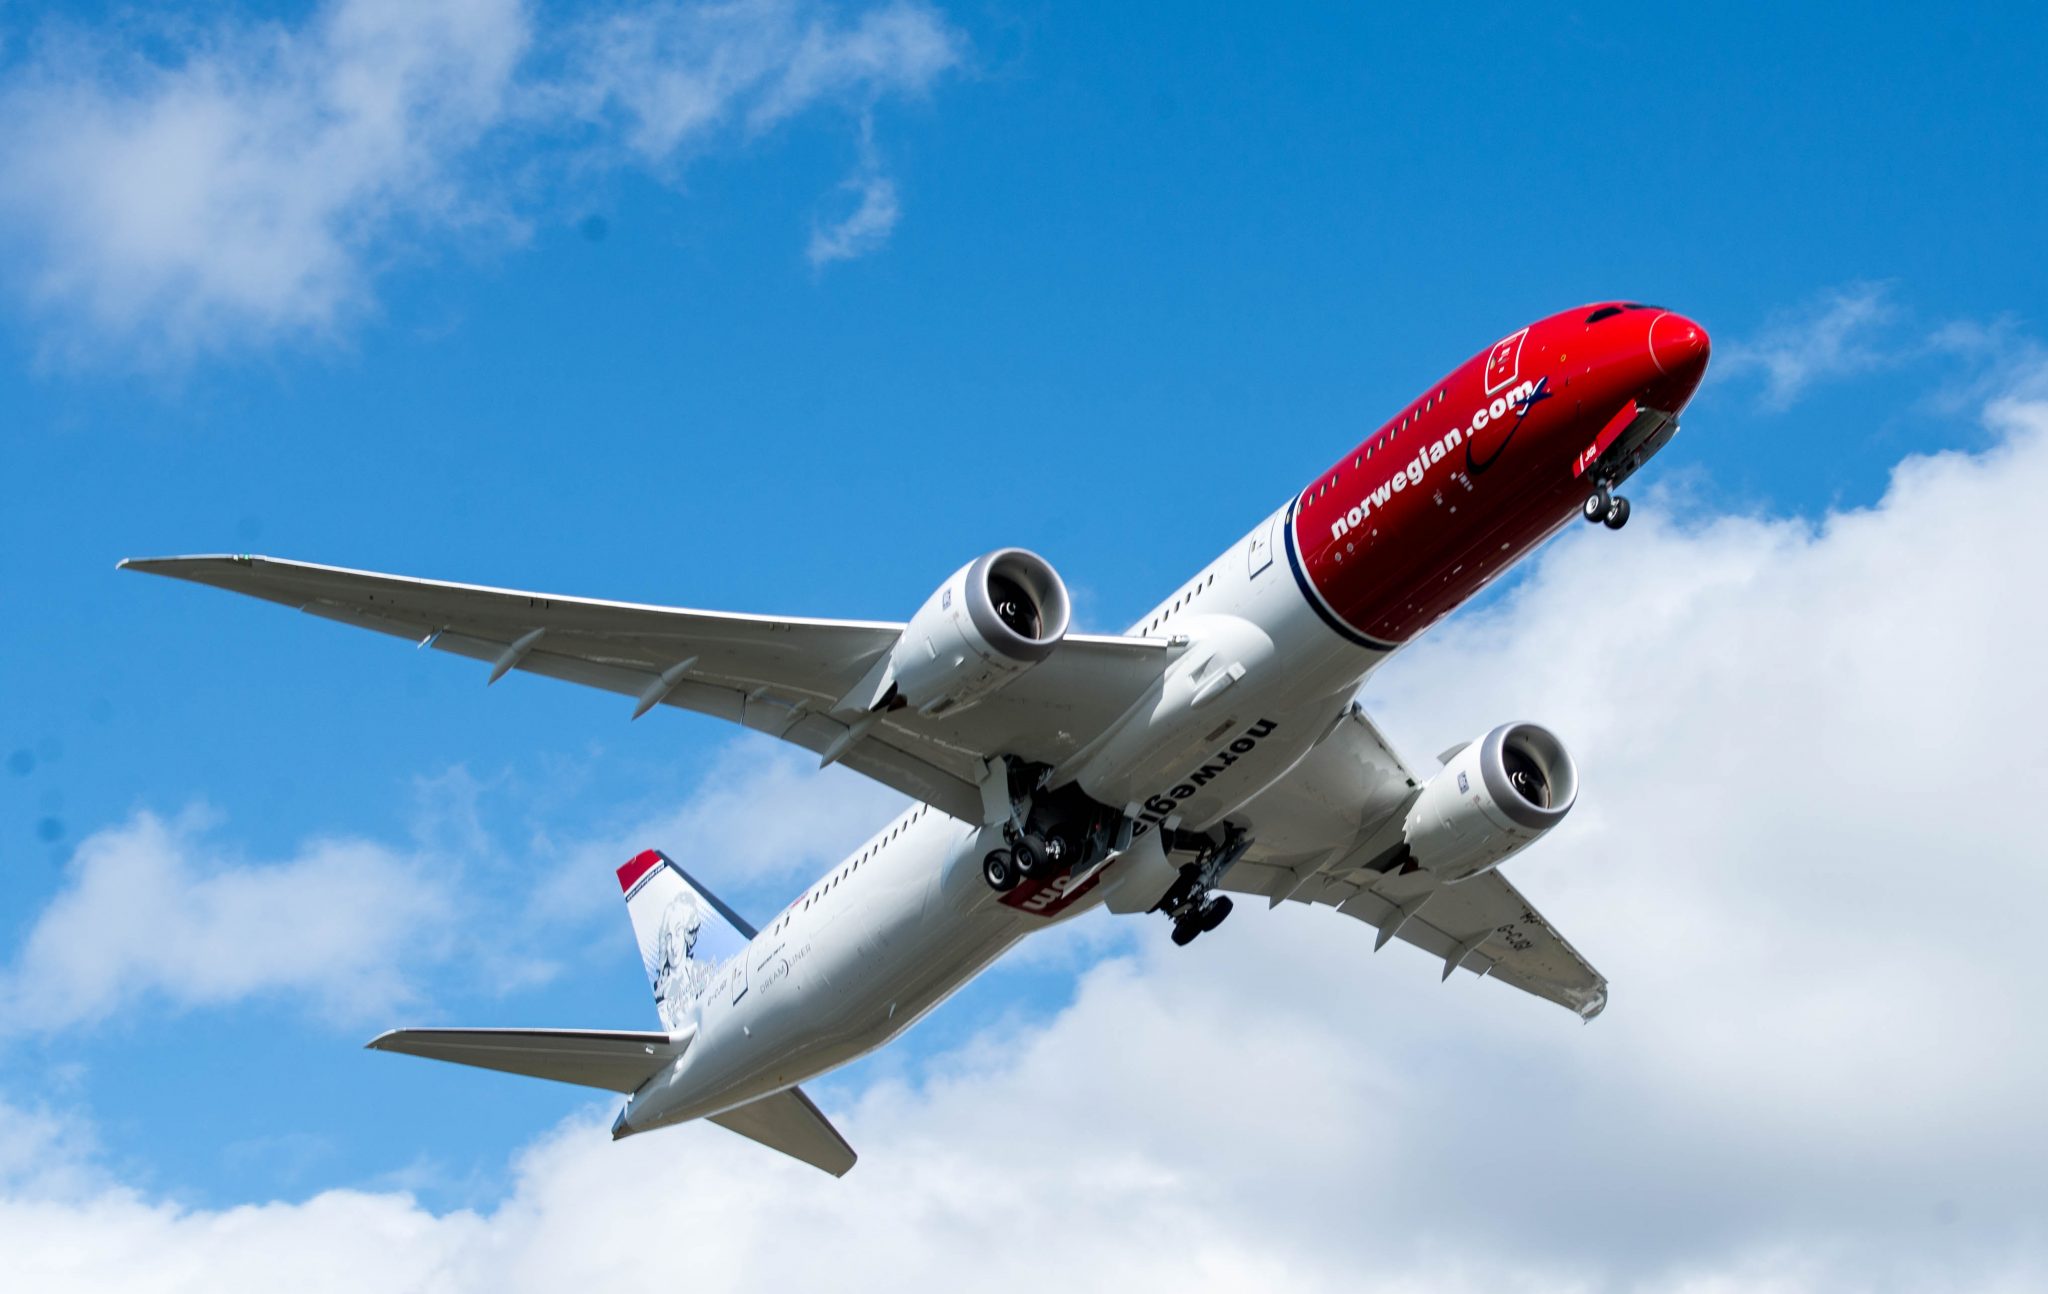 Norwegian’s passenger numbers grow 14% in August